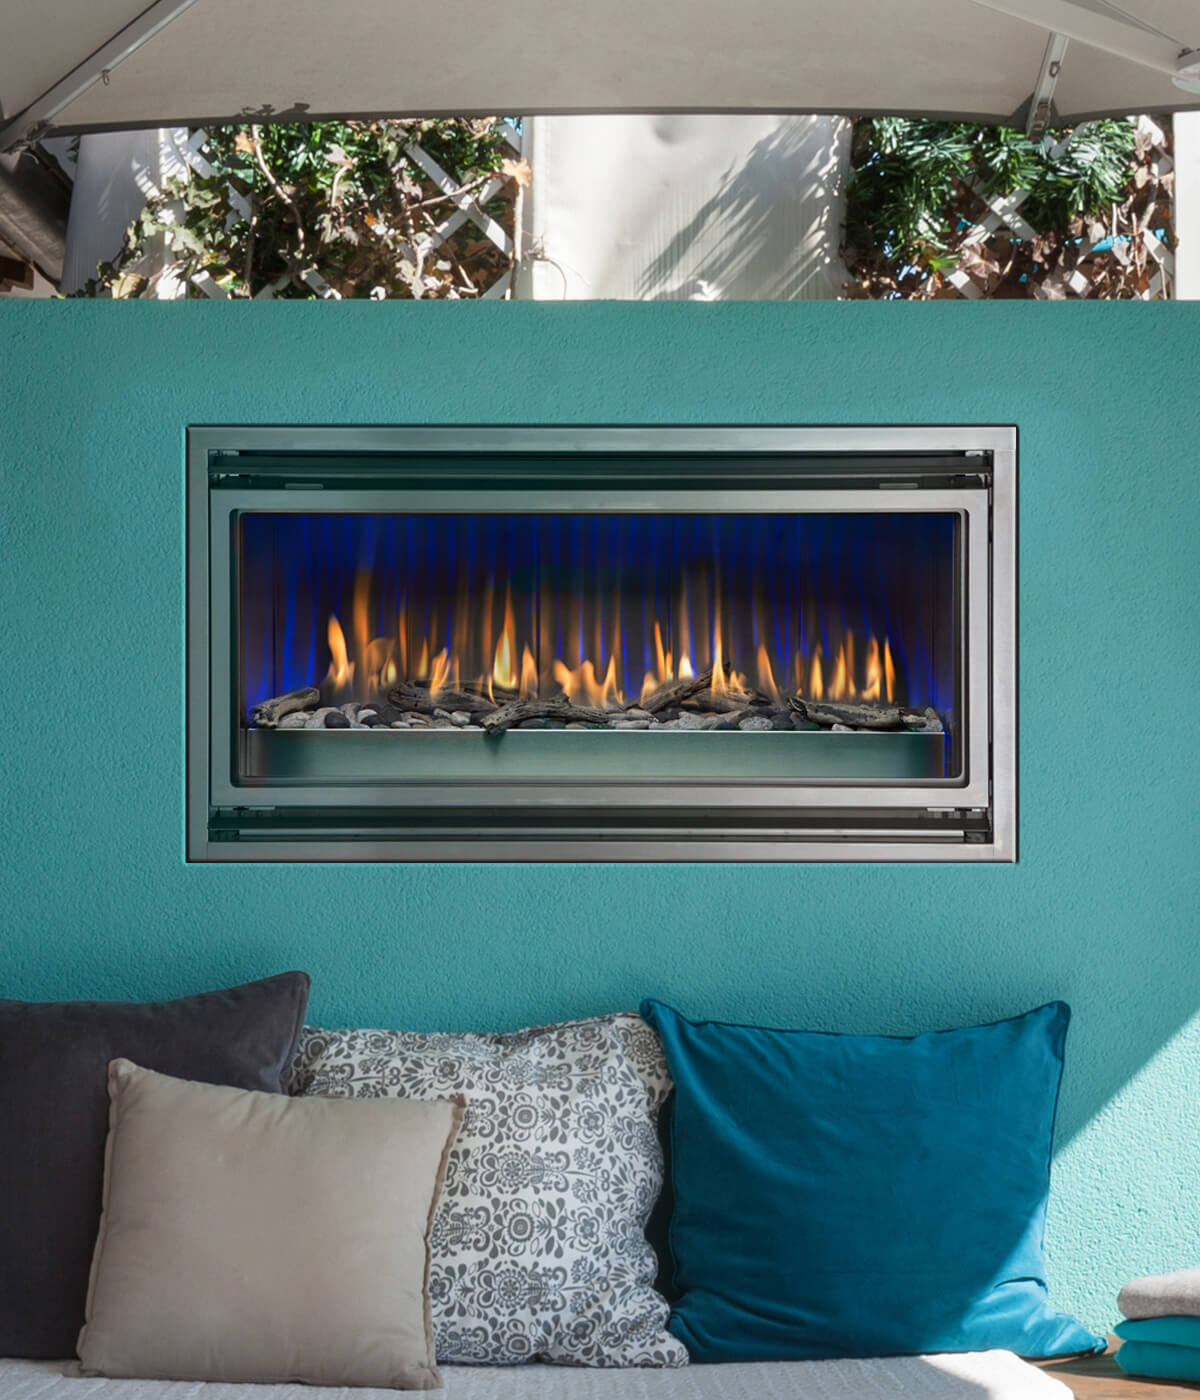 Montigo Mahana PL42VO outdoor fireplace shown in a seaside patio